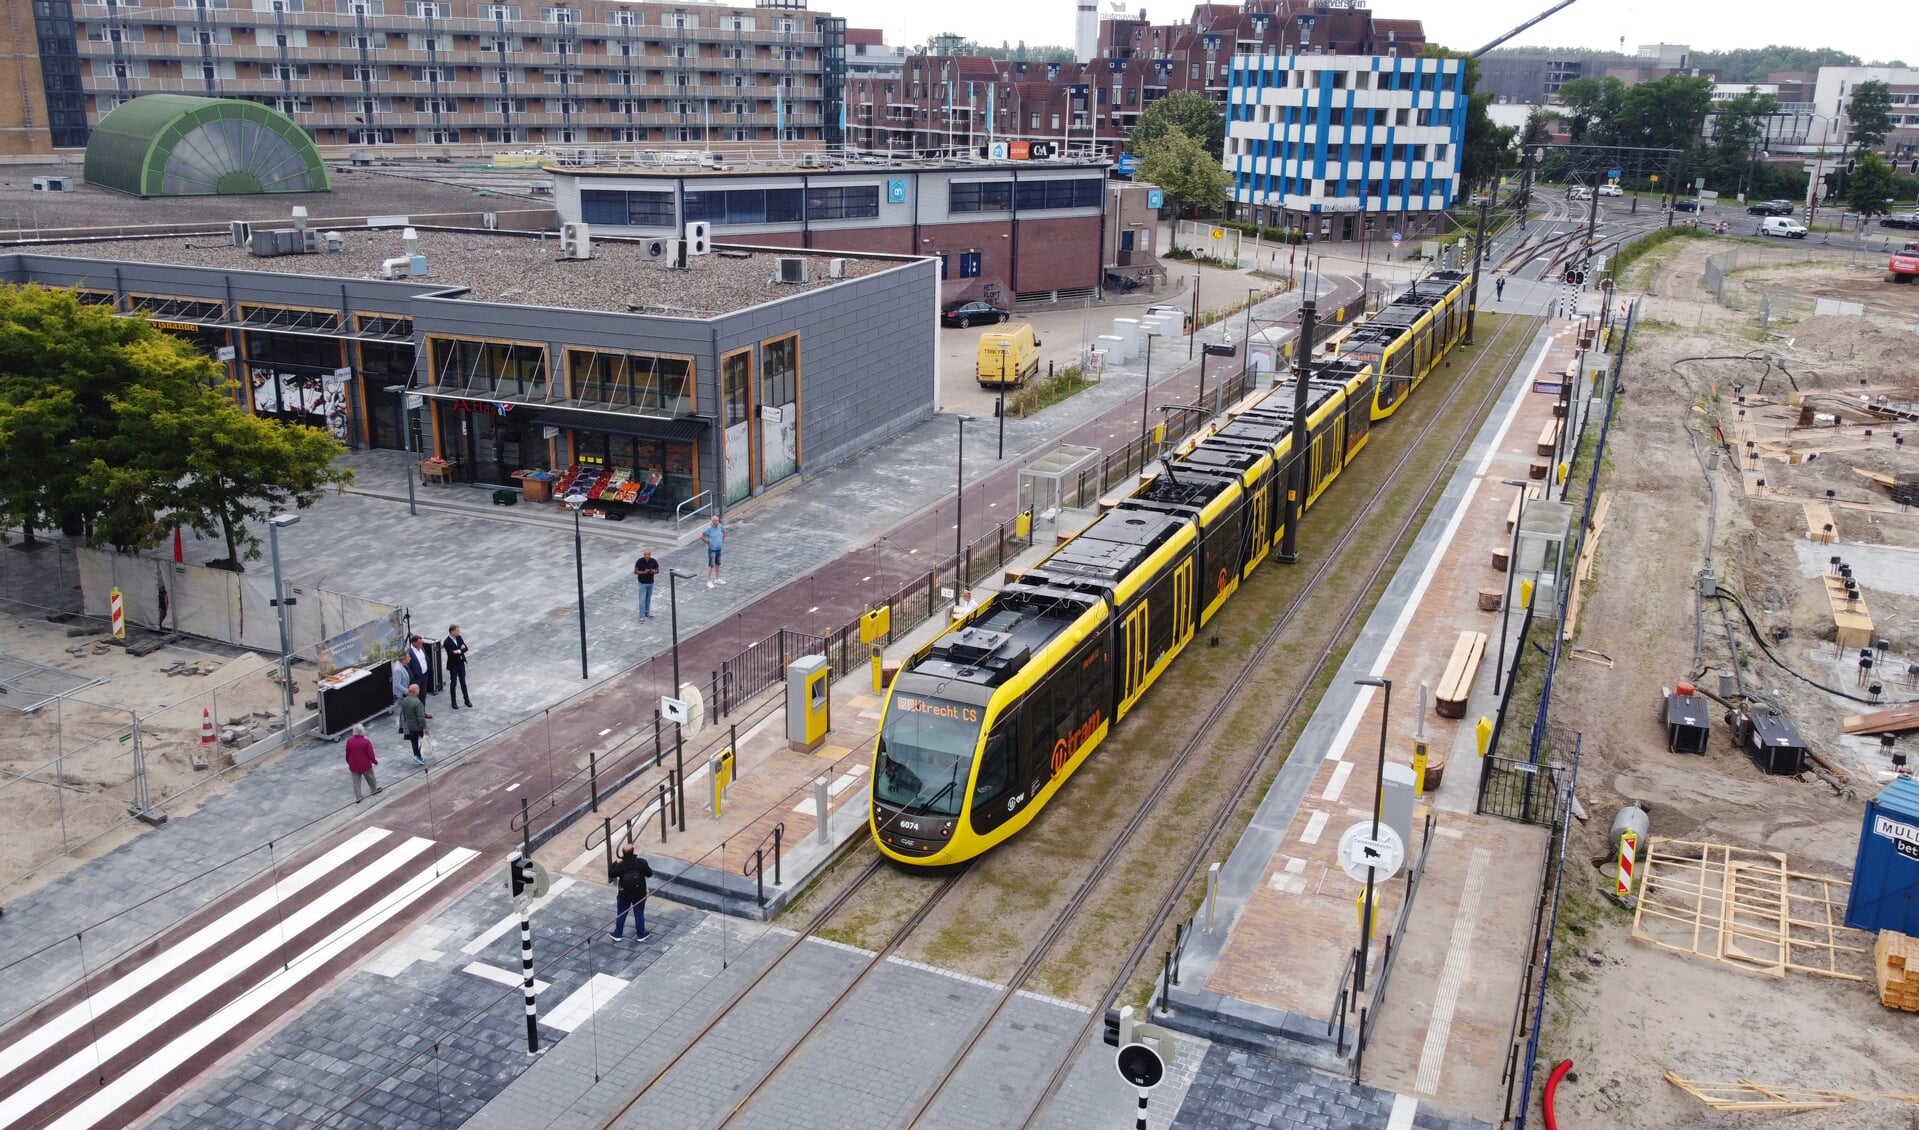 Opening van de nieuwe tramhalte in het centrum van Nieuwegein.

